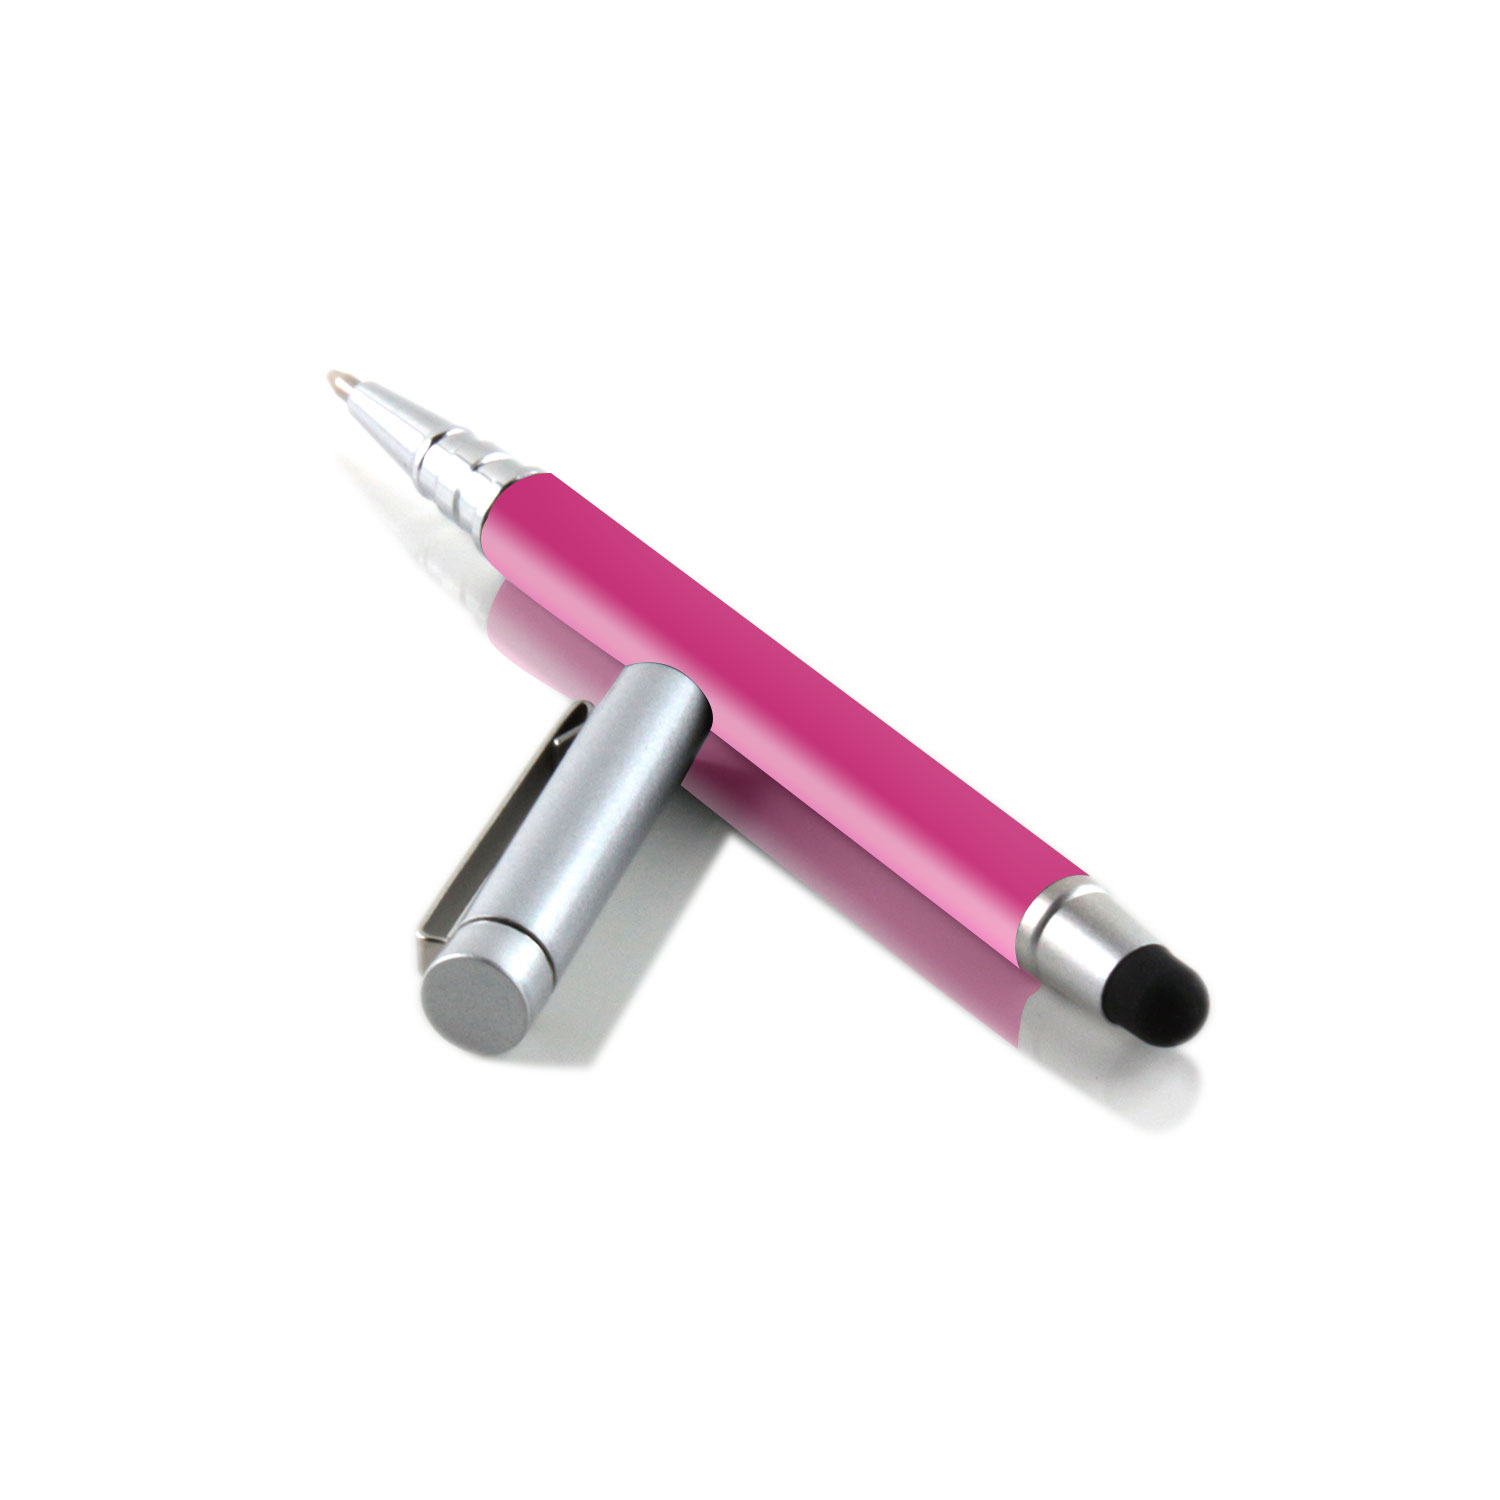 Pen | iPhone | Touchpen für Stylus | SILBER Stift Kugelschreiber SLABO und PINK Eingabestift ergonomischer etc. Touch iPad